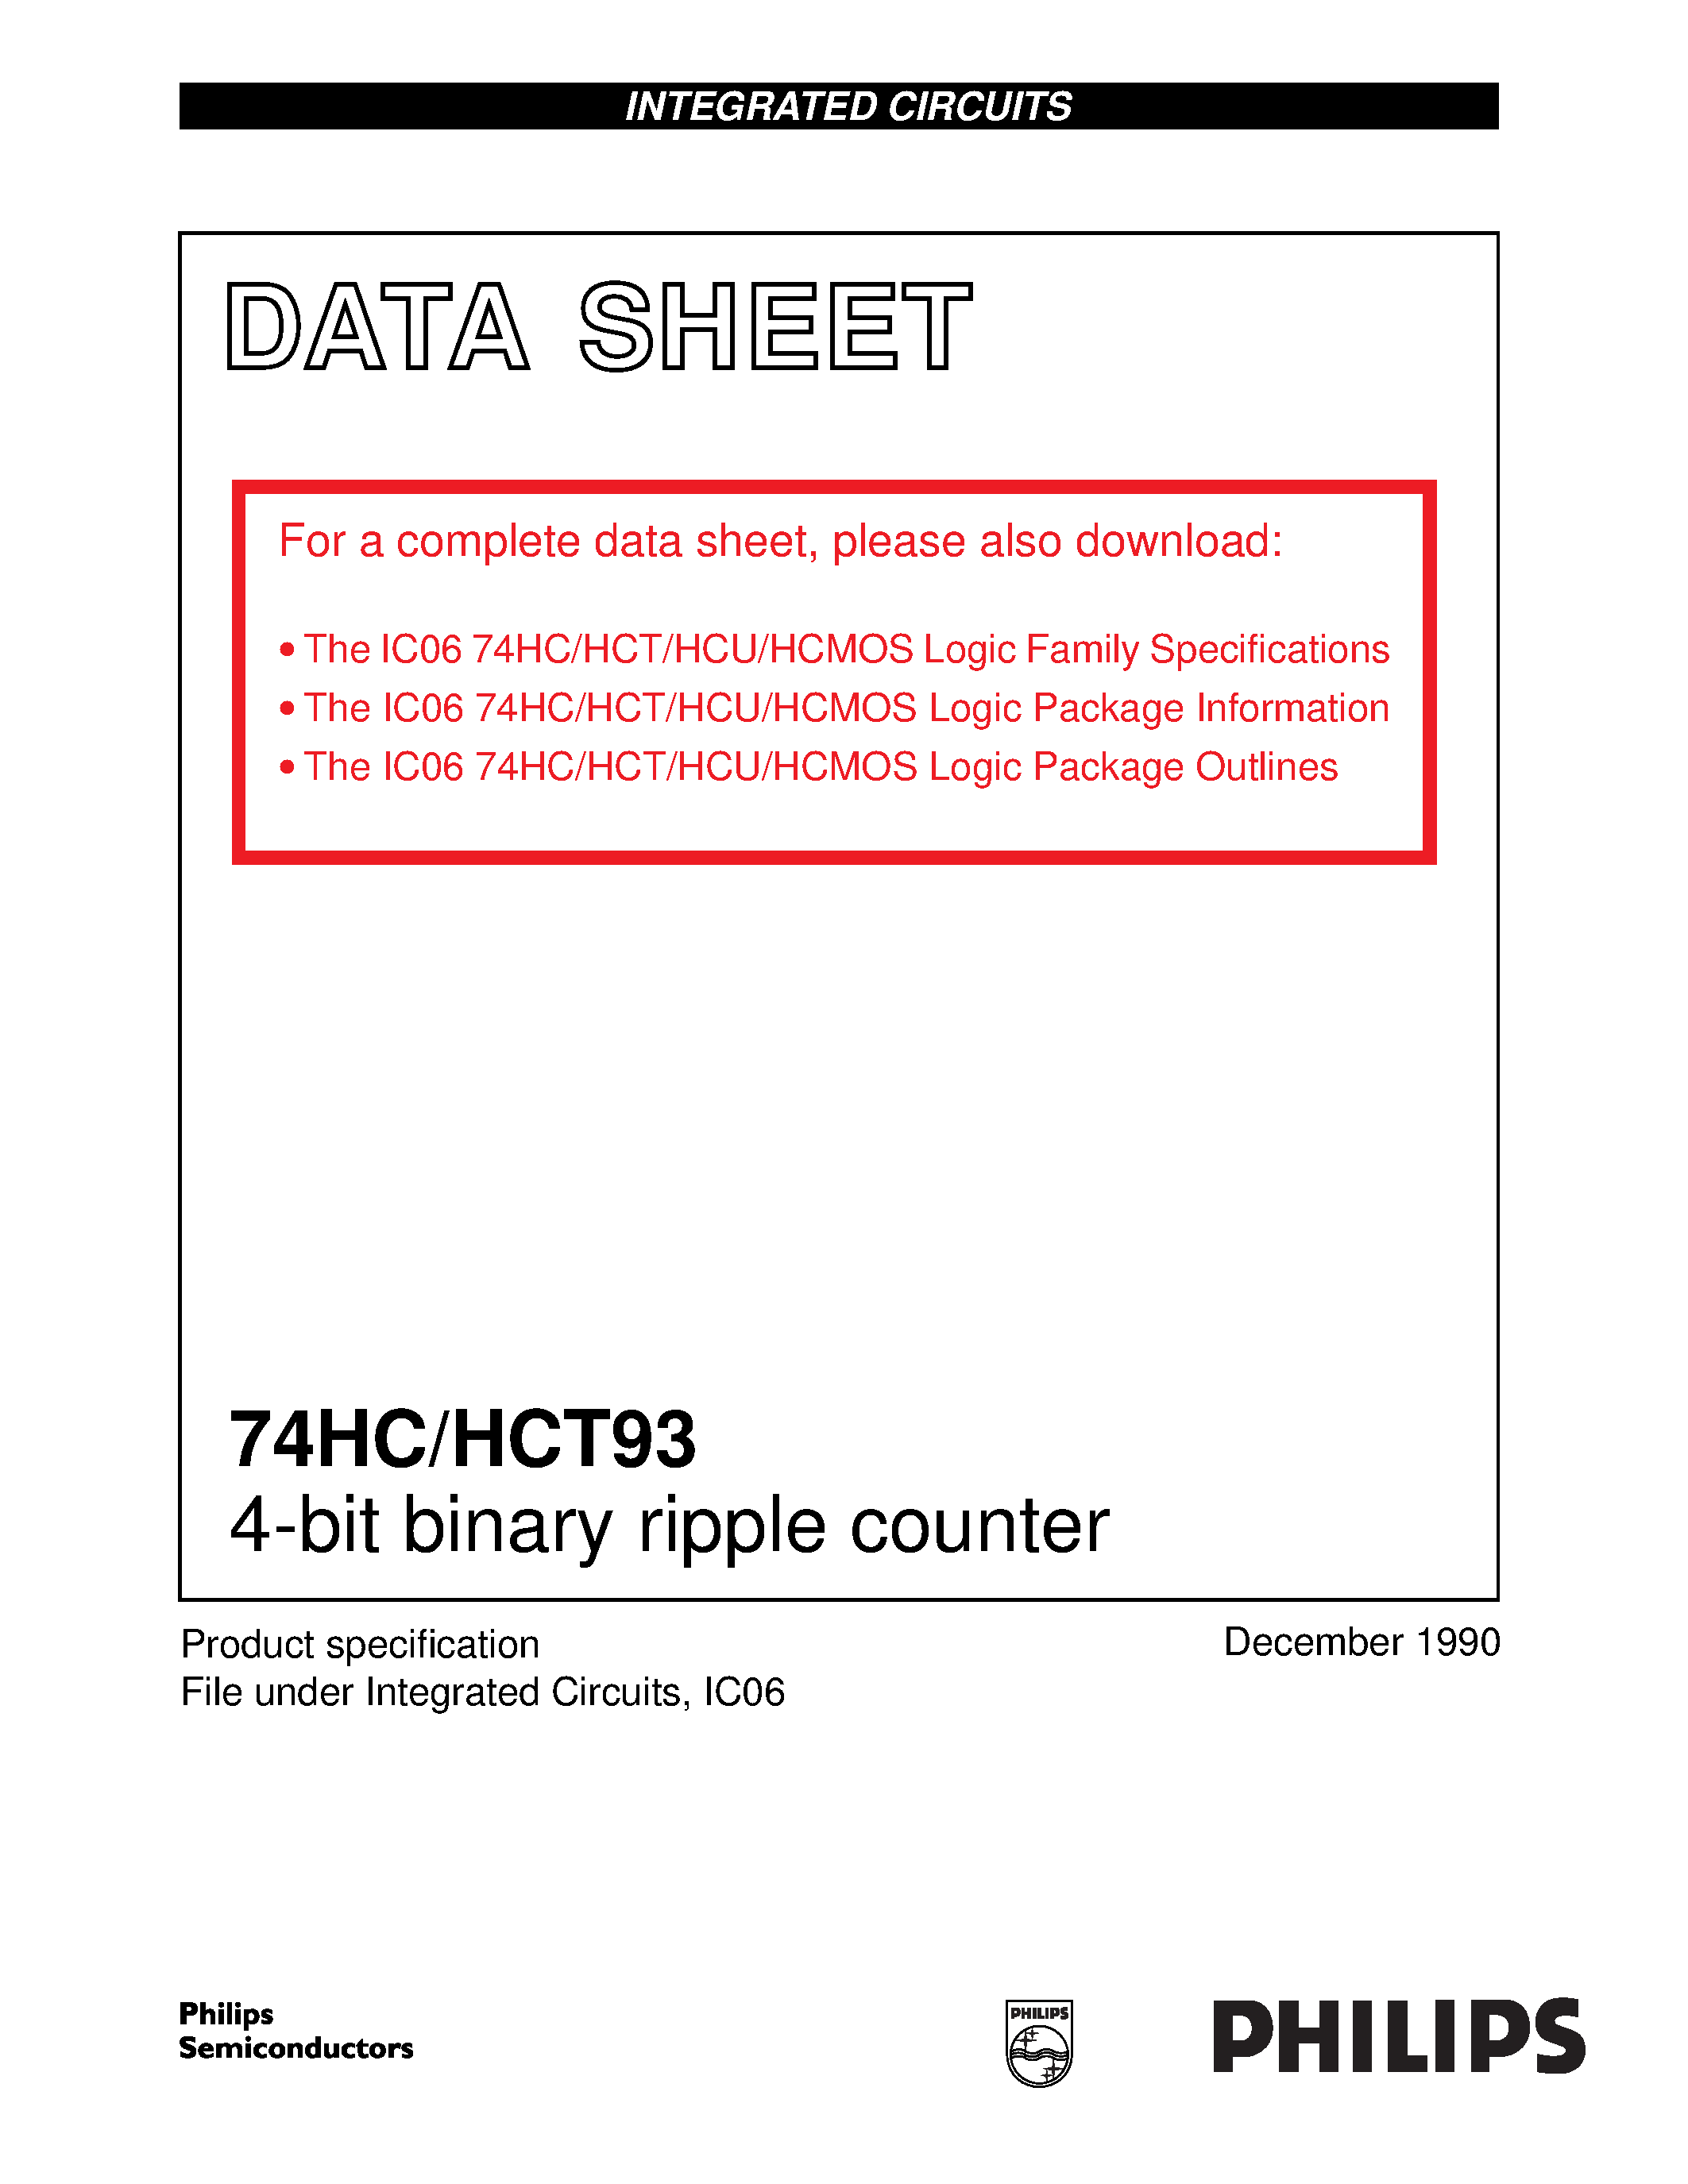 Datasheet 74HCT93 - 4-bit binary ripple counter page 1